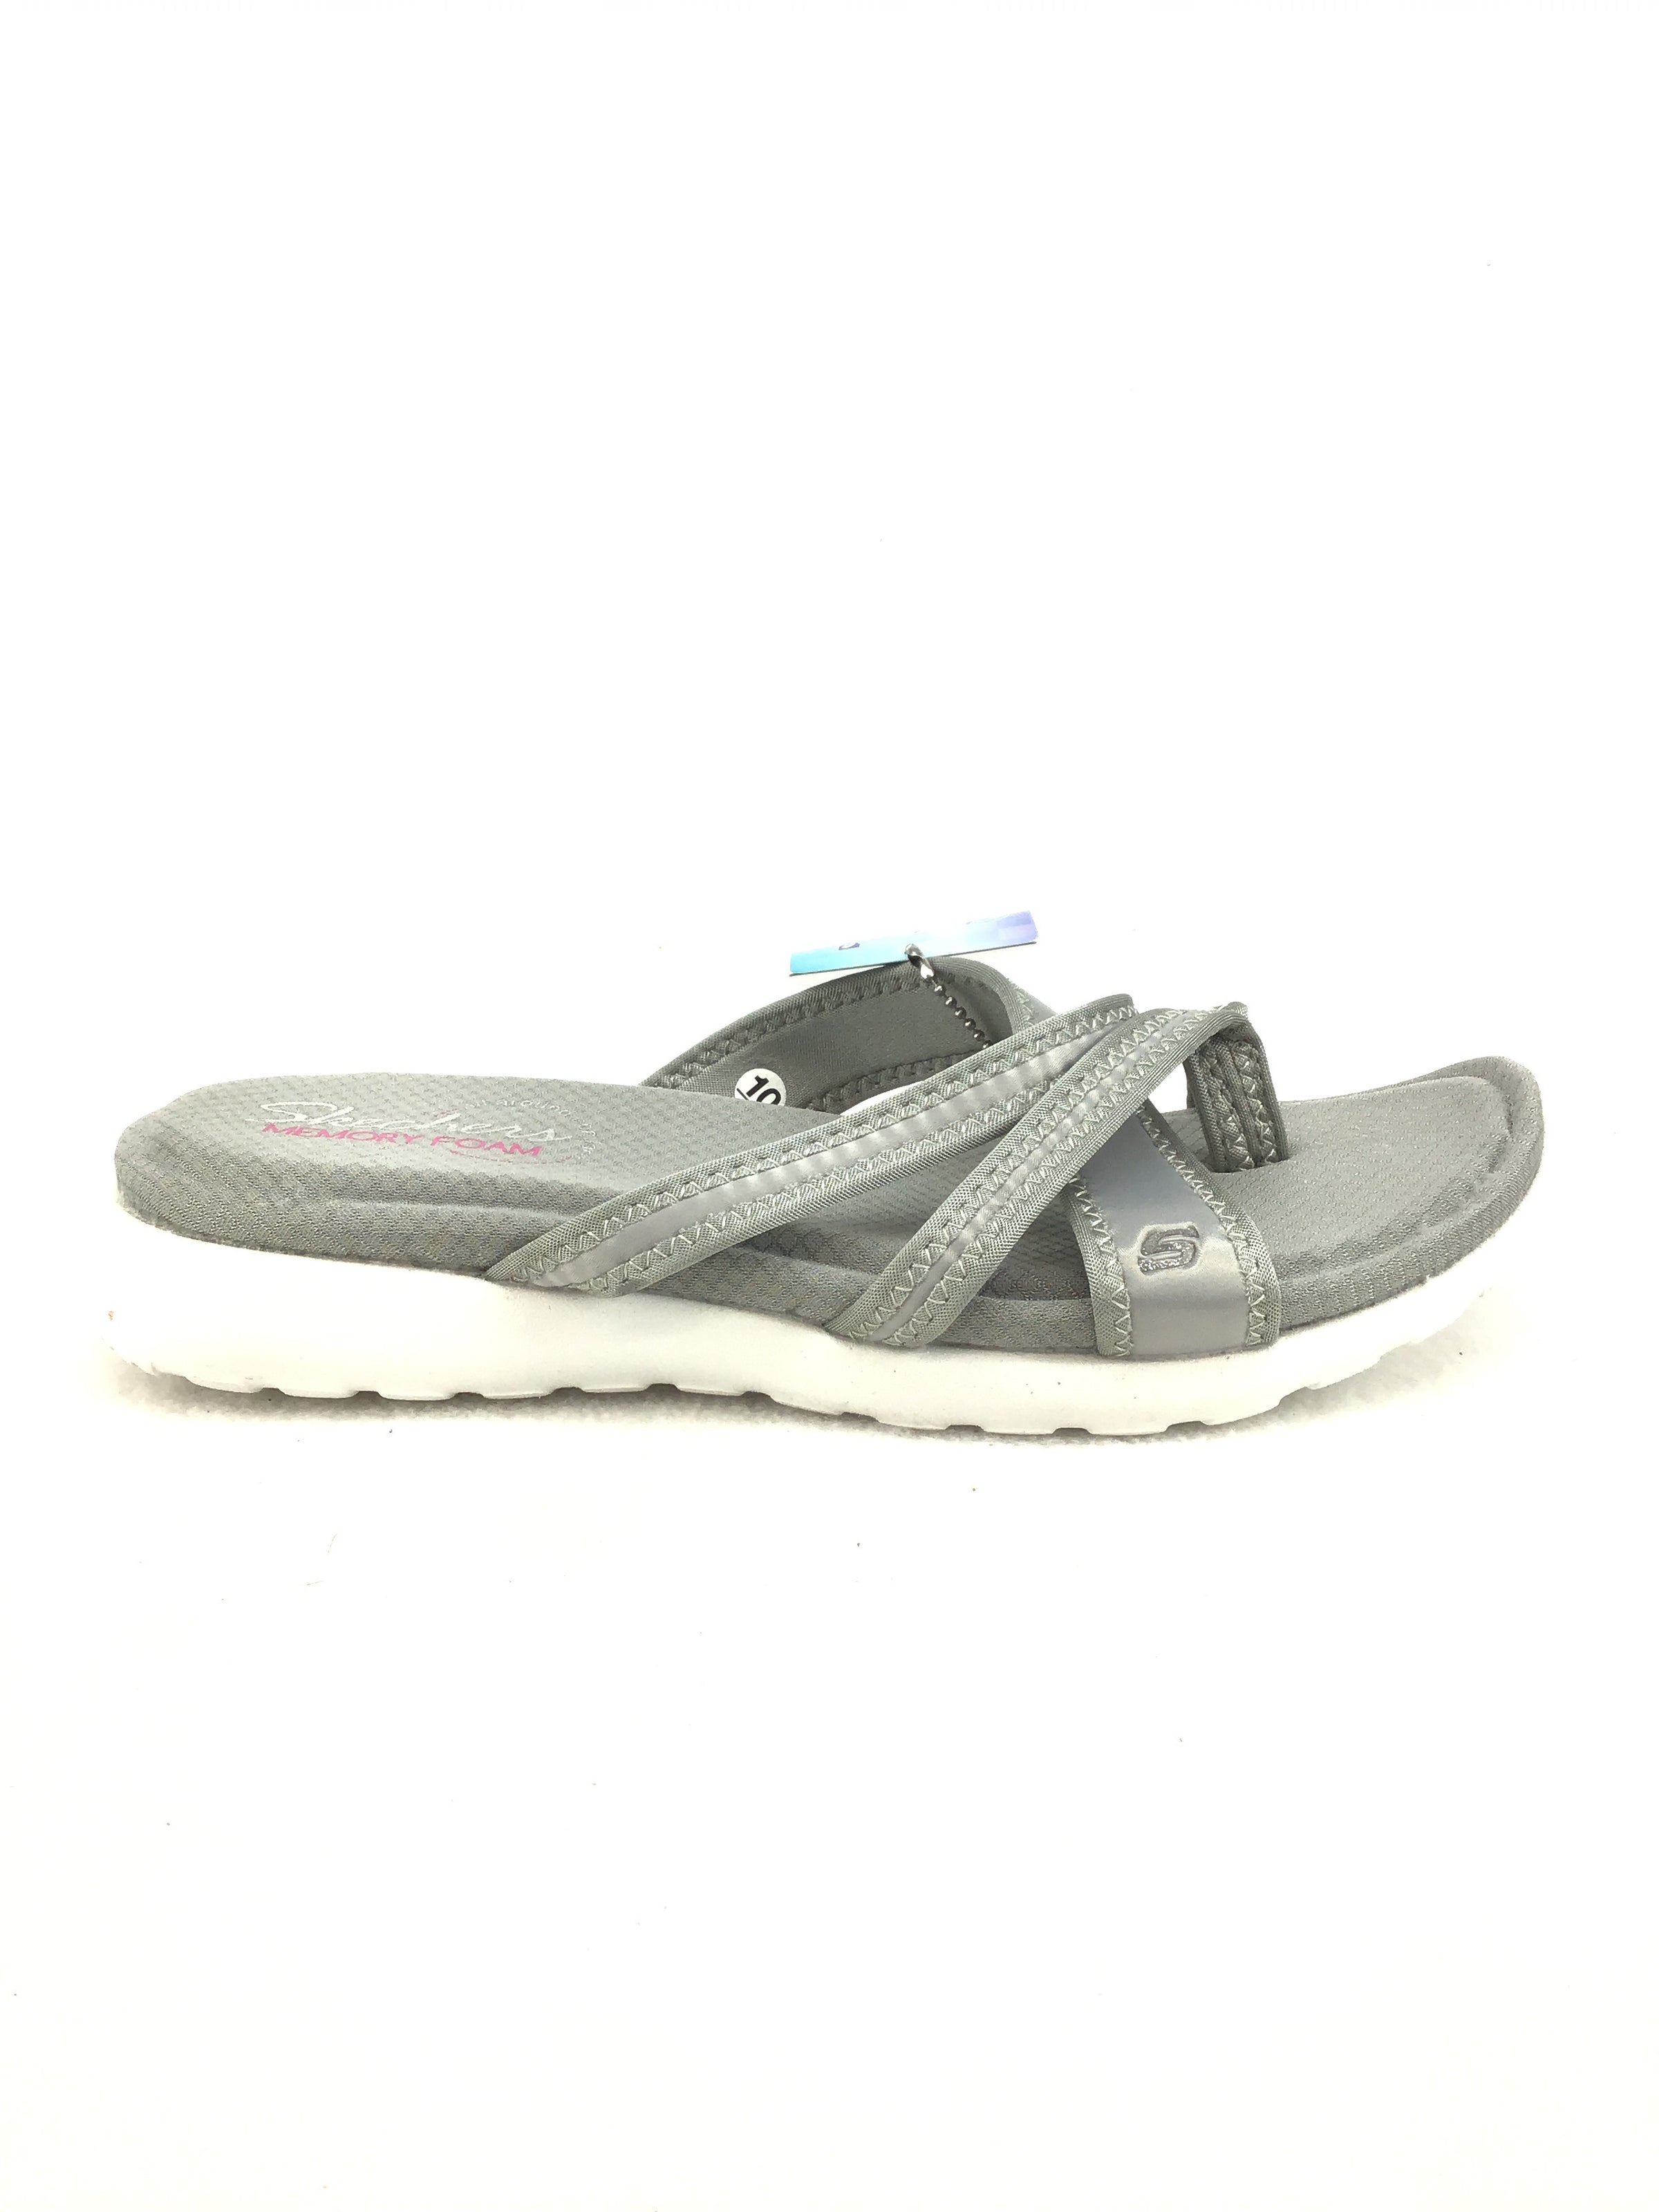 Skechers Memory Foam Sandals Size 10